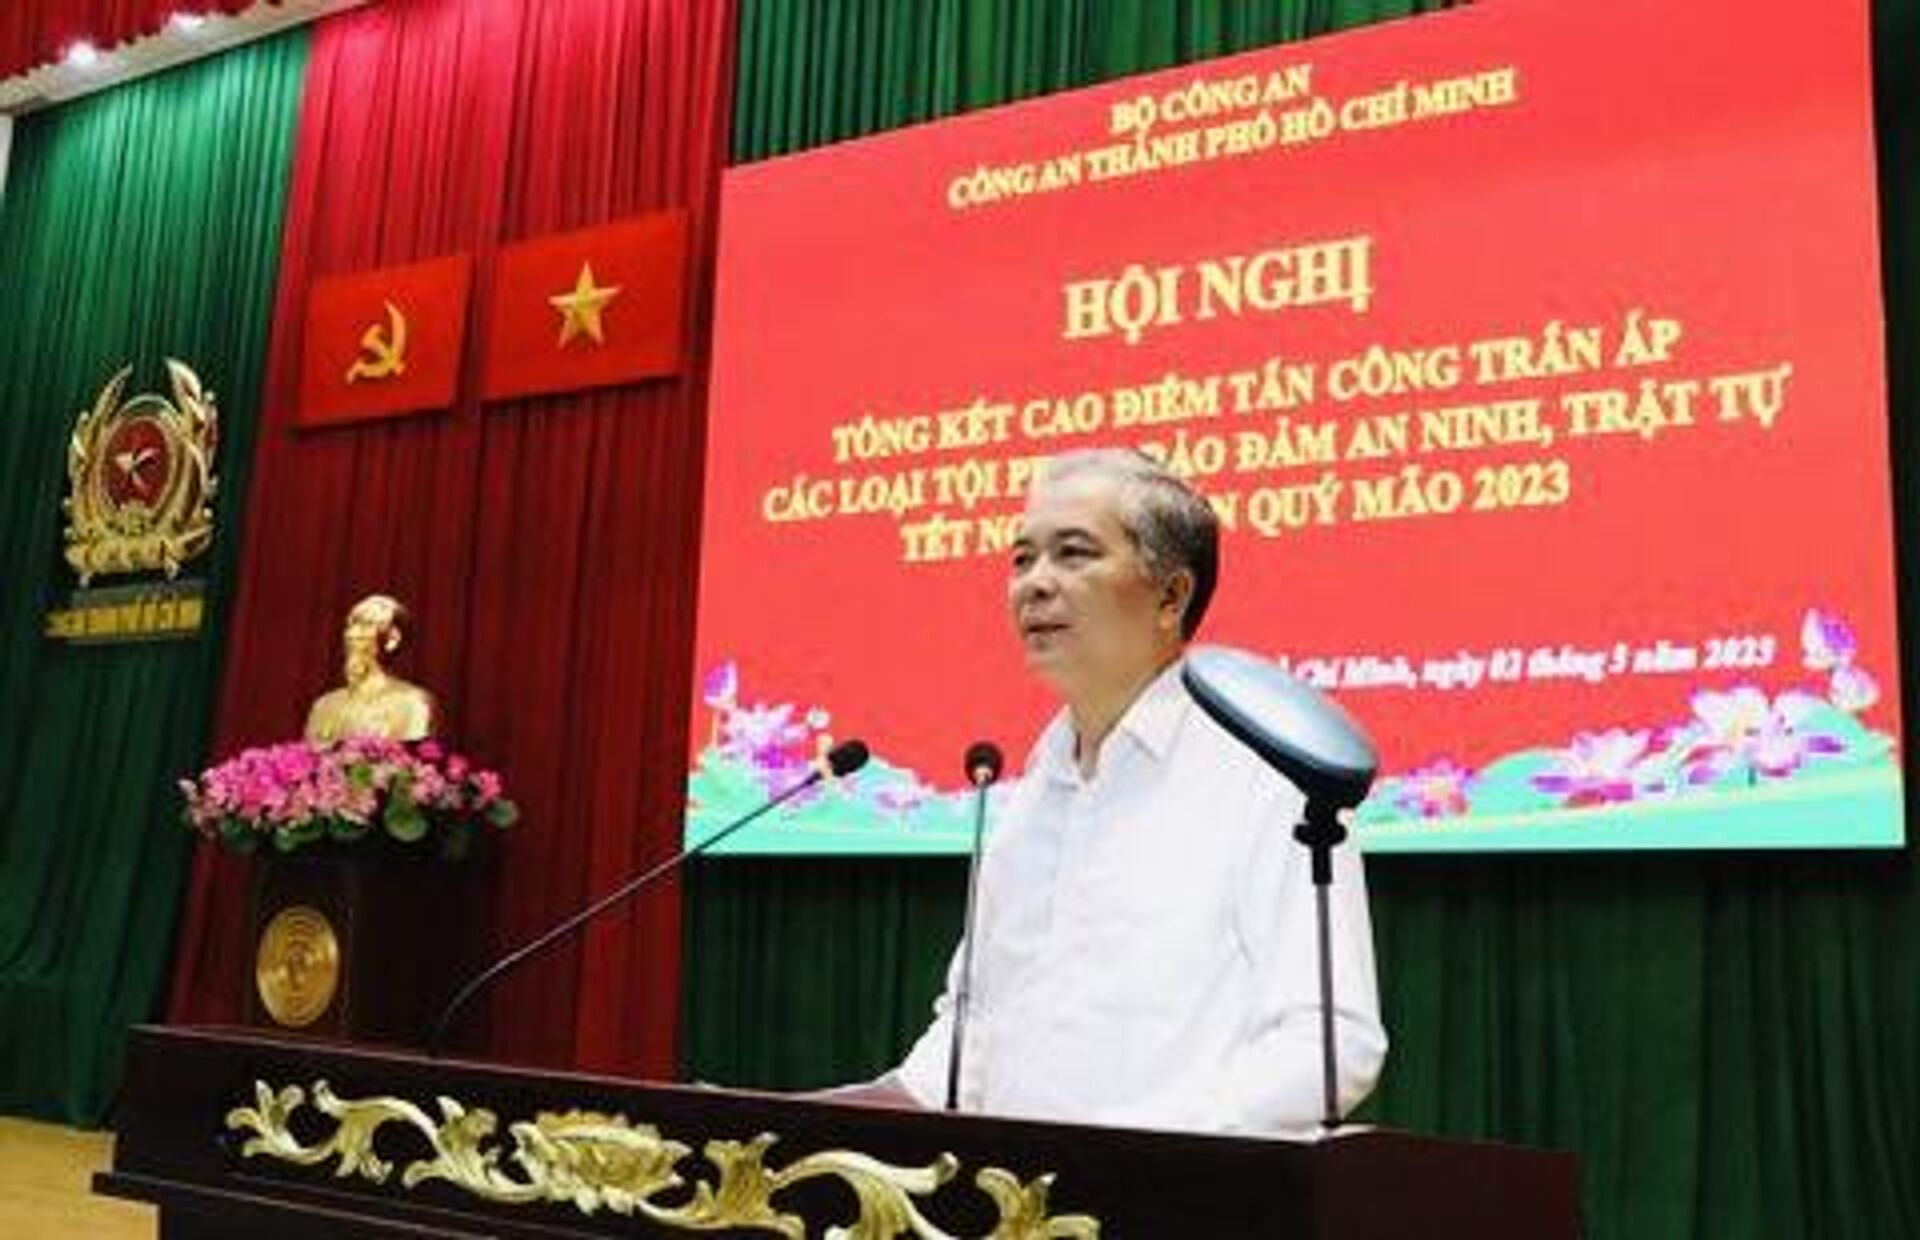 Đồng chí Ngô Minh Châu - Phó Chủ tịch UBND TP phát biểu tại hội nghị - Sputnik Việt Nam, 1920, 02.03.2023